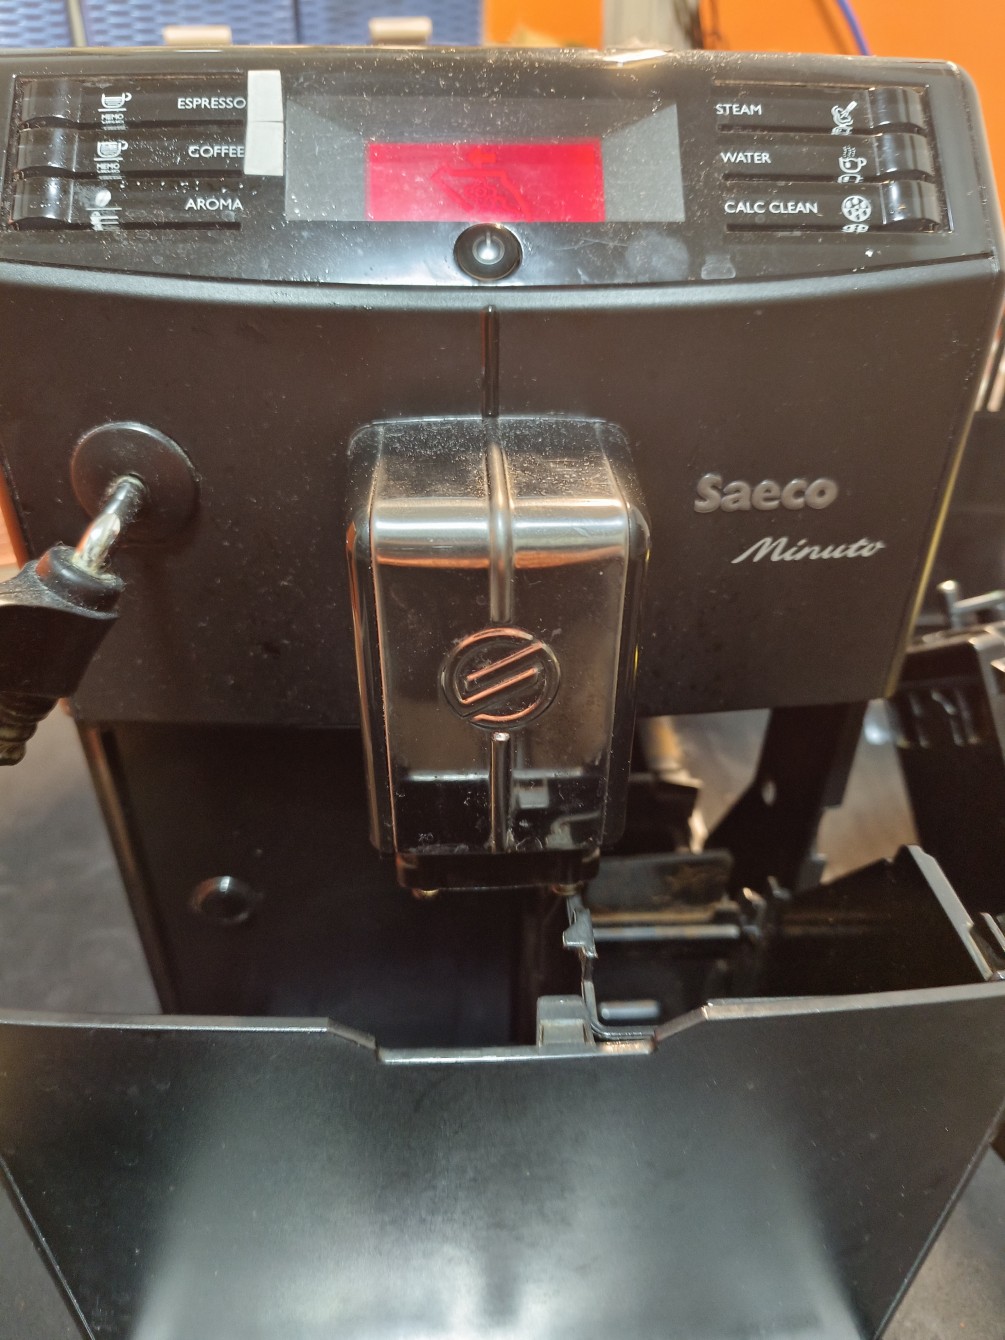 8761-全自動咖啡機-無法開機